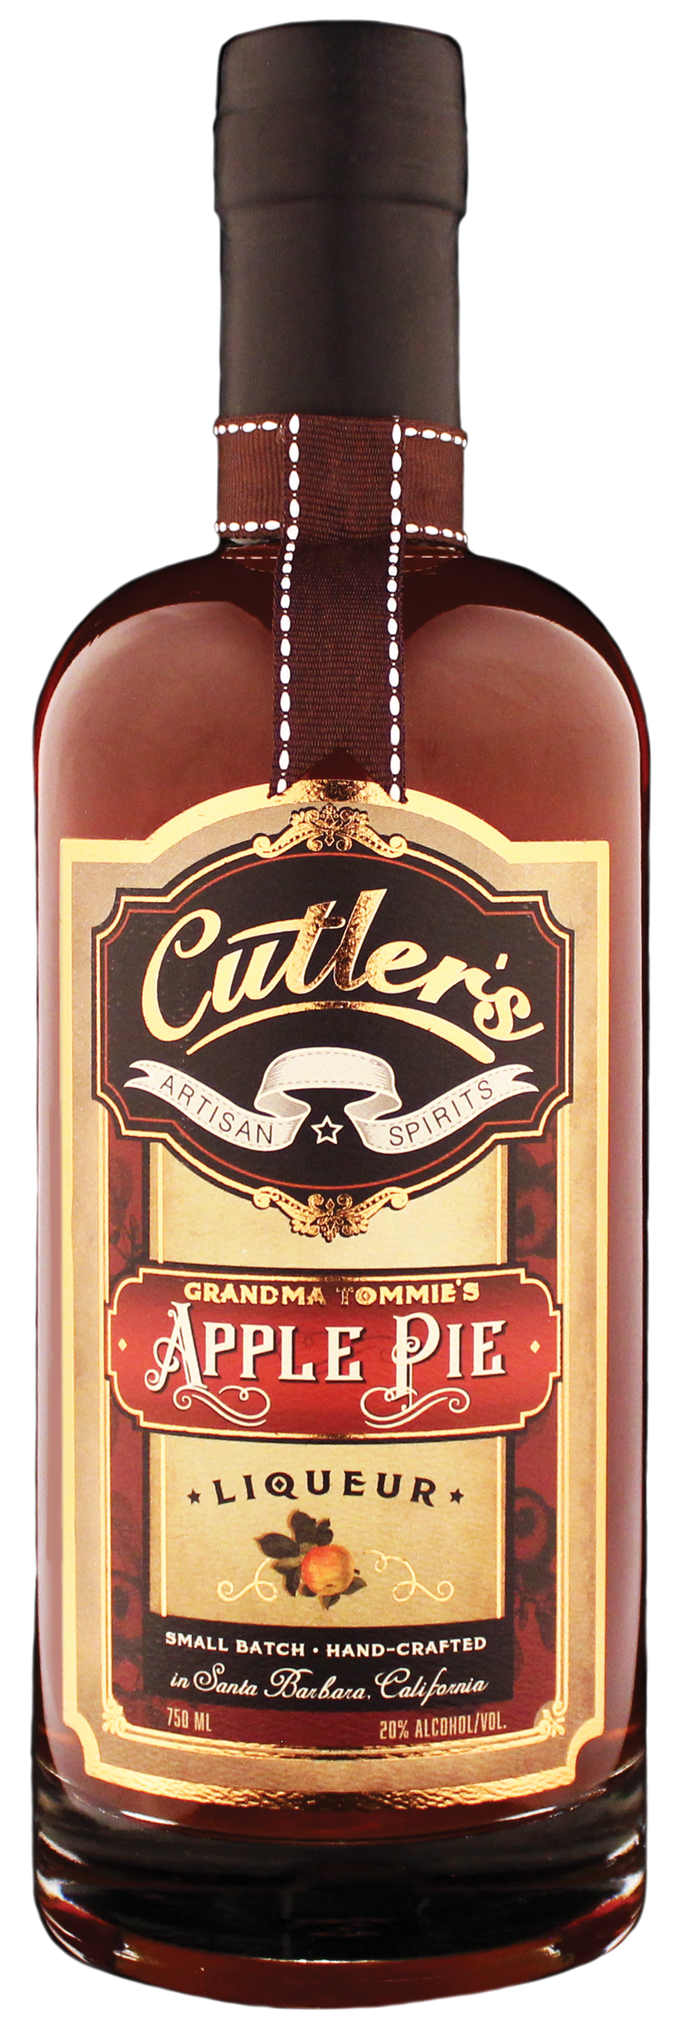 Cutler's Grandma Tommie's Apple Pie Liqueur